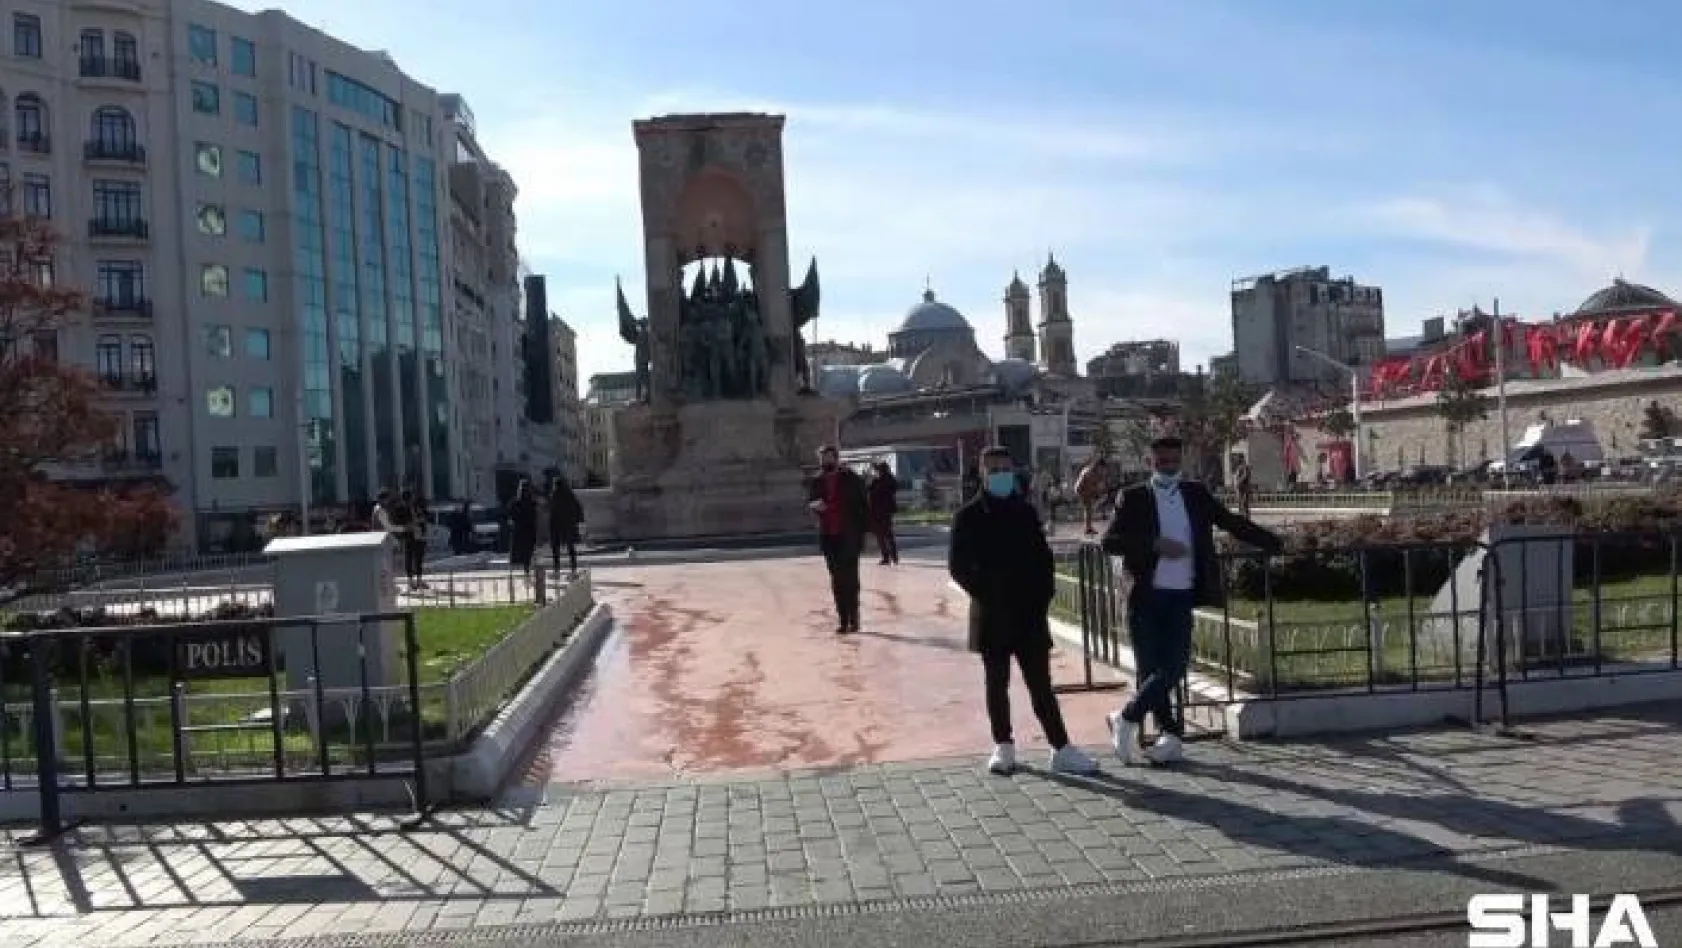 Güzel havayı fırsat bilen turistler Taksim Meydanı'na akın etti